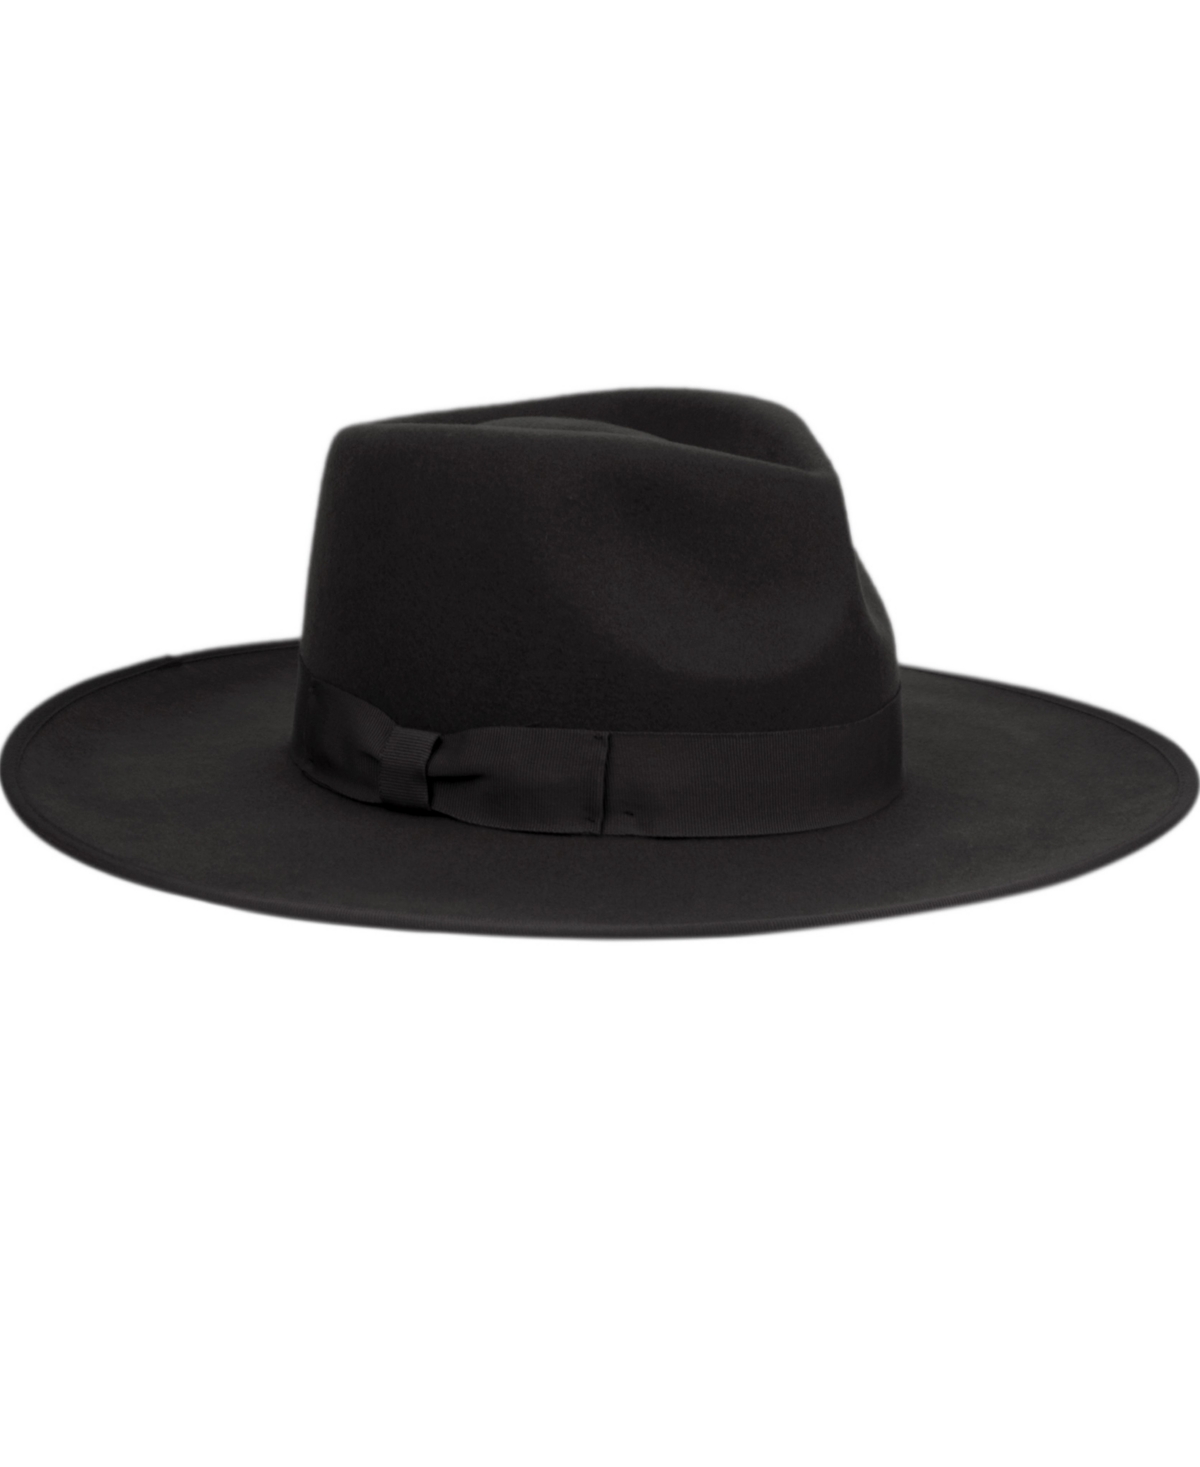 Angela & William Women's Wide Brim Felt Rancher Fedora Hat In Black